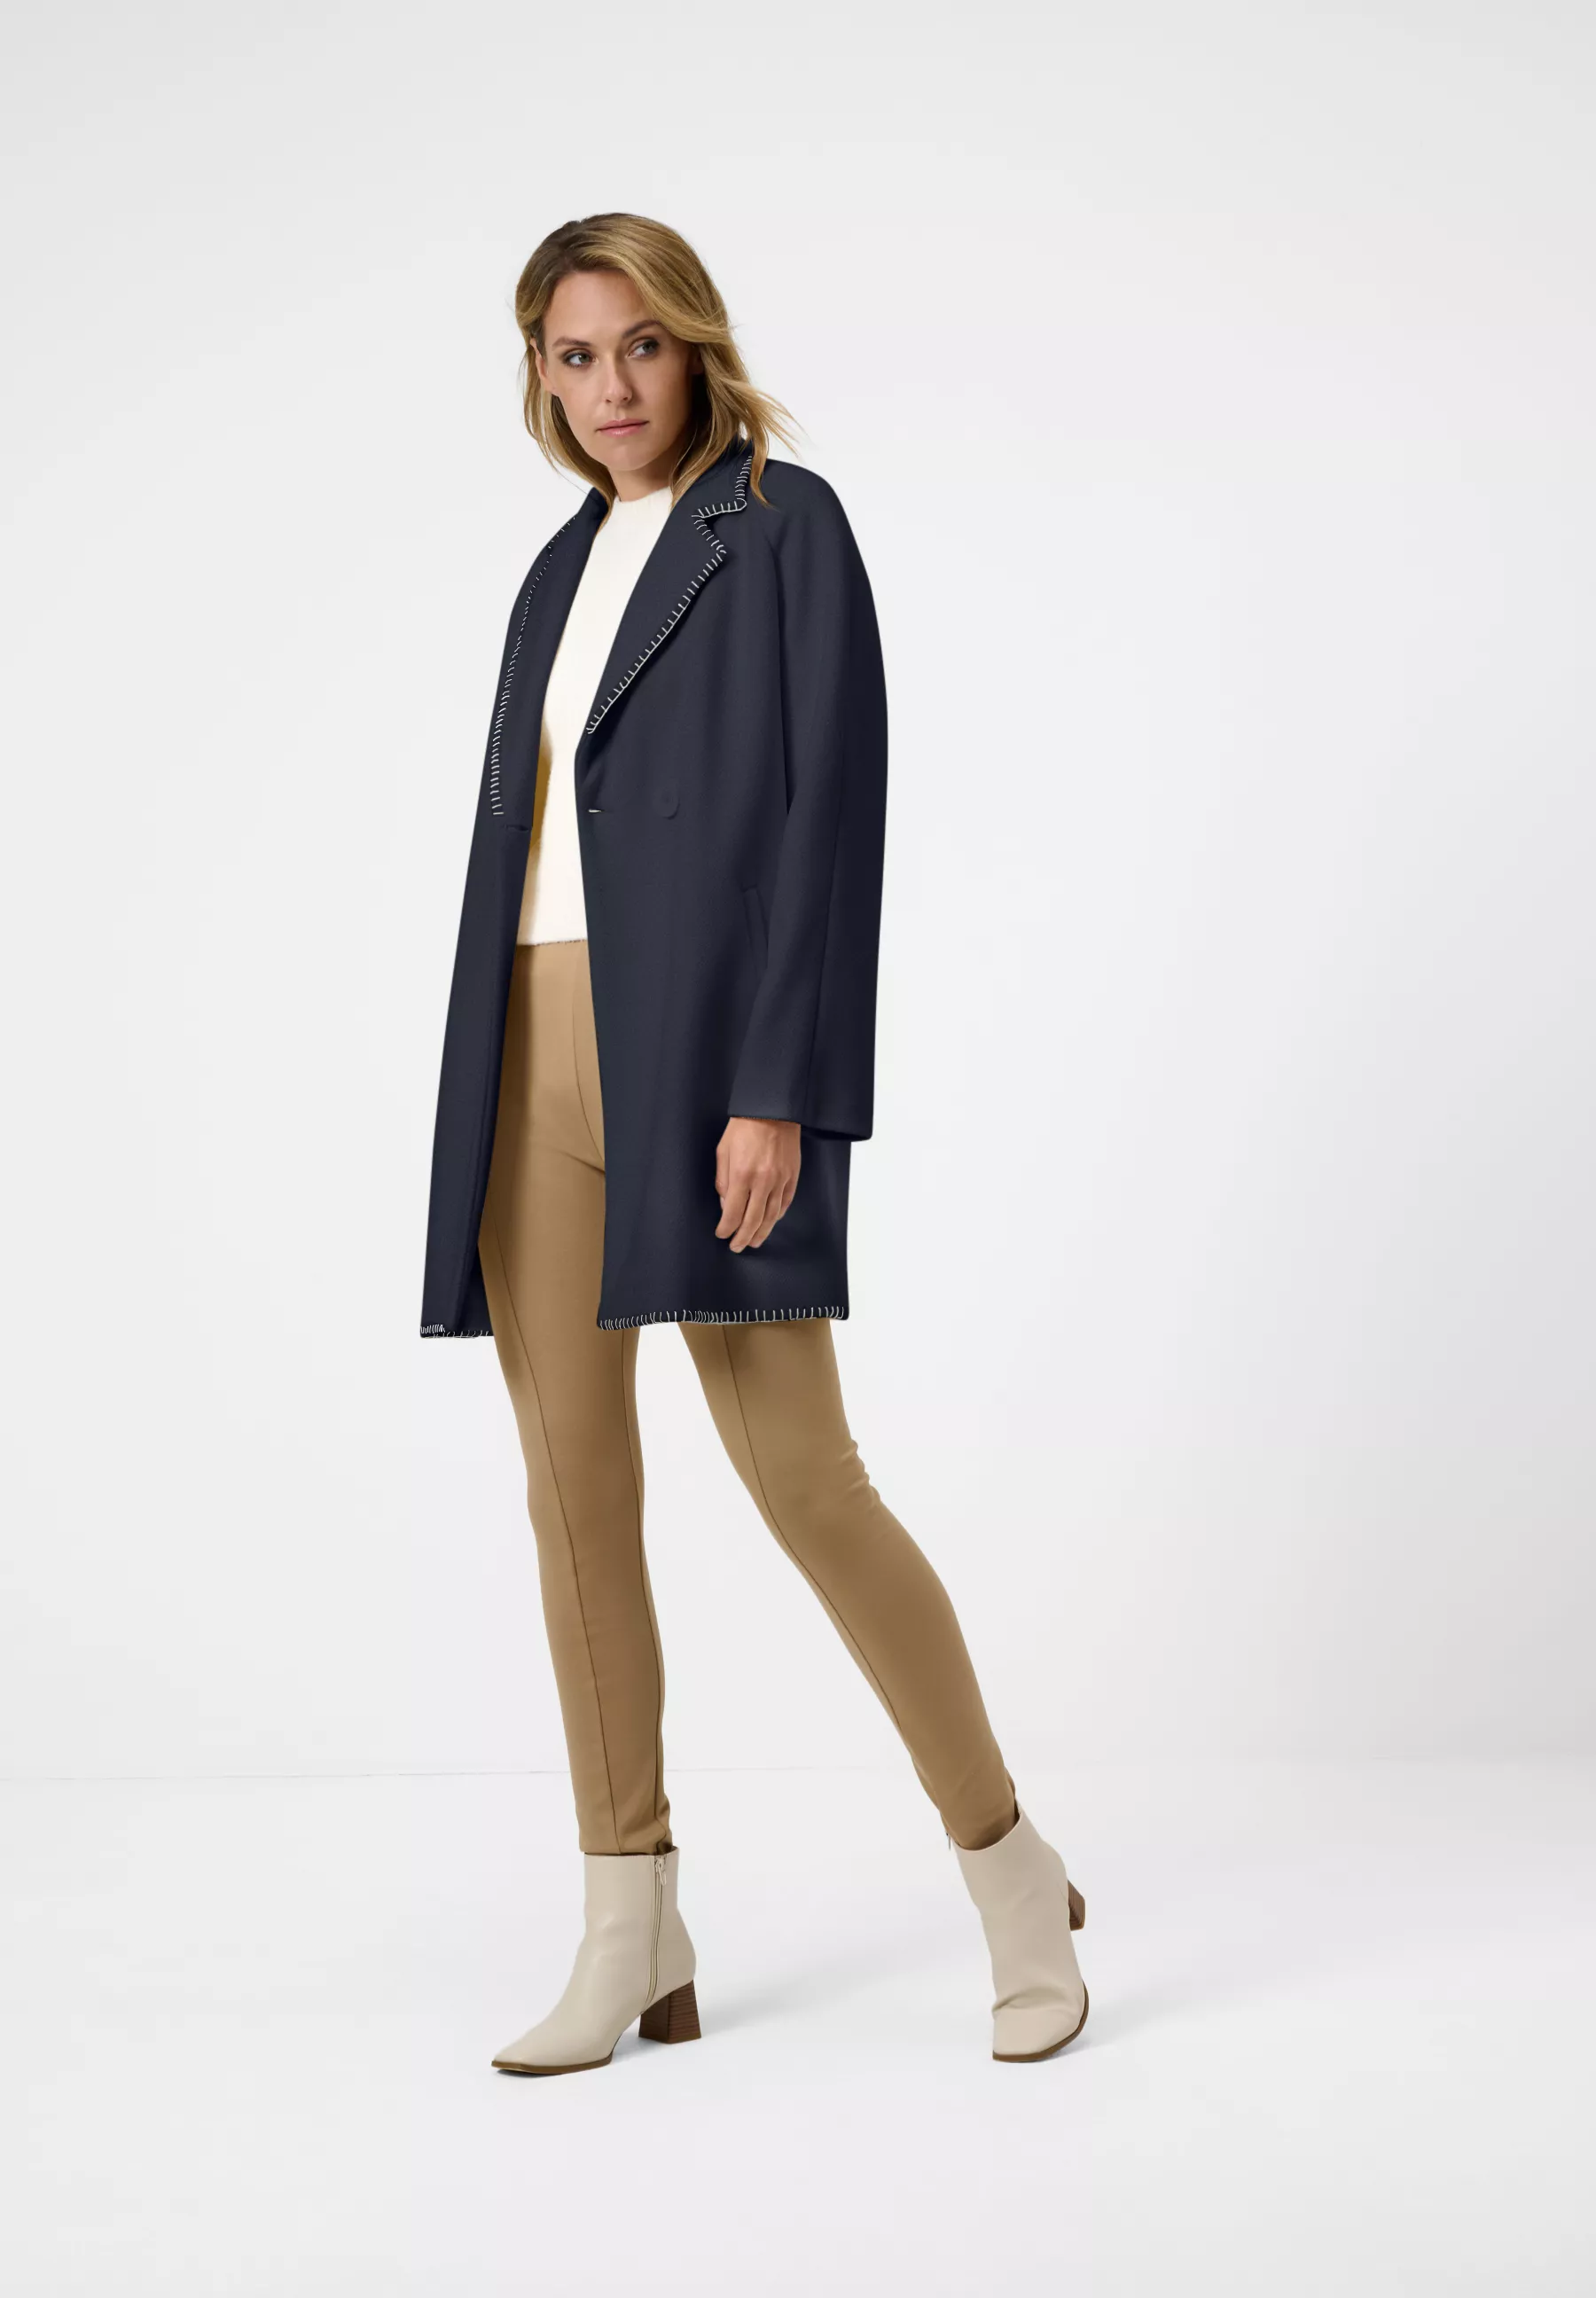 Damen Textil Mantel Silvia in Blau von Ricano, Vollansicht am Model